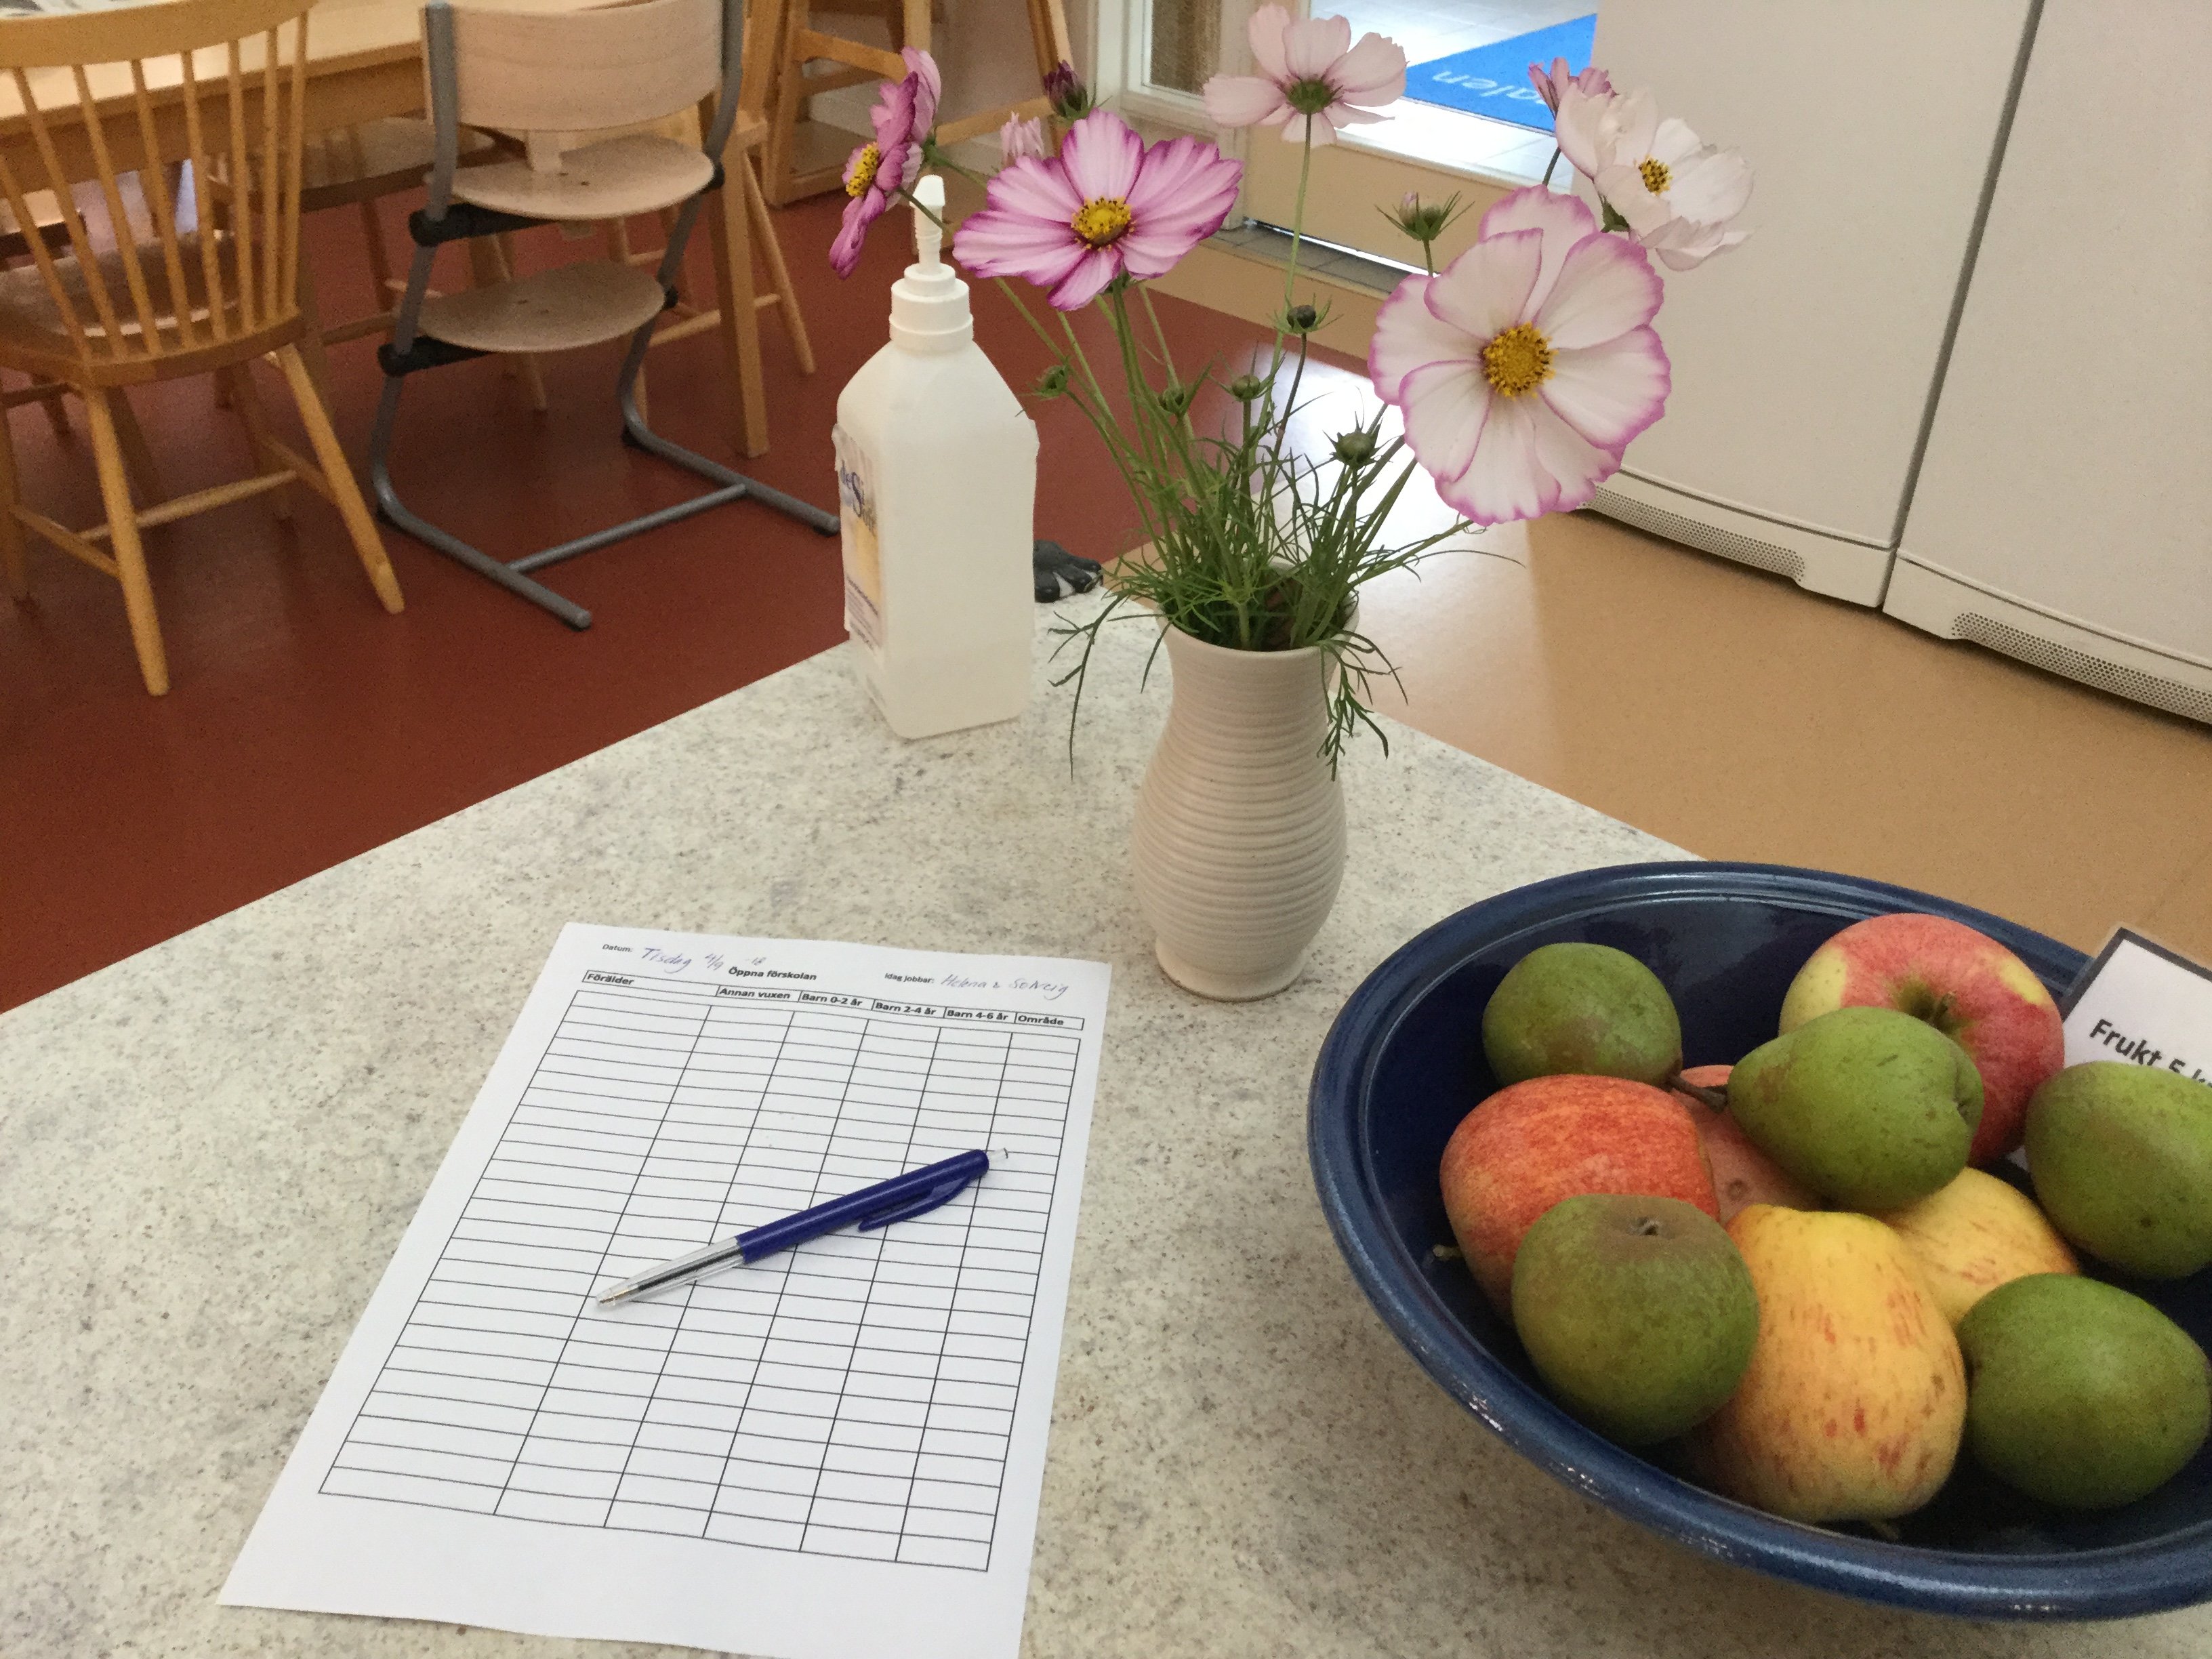 En bänk med närbild på en vas med blomma i, anmälningslista och ett fruktfat